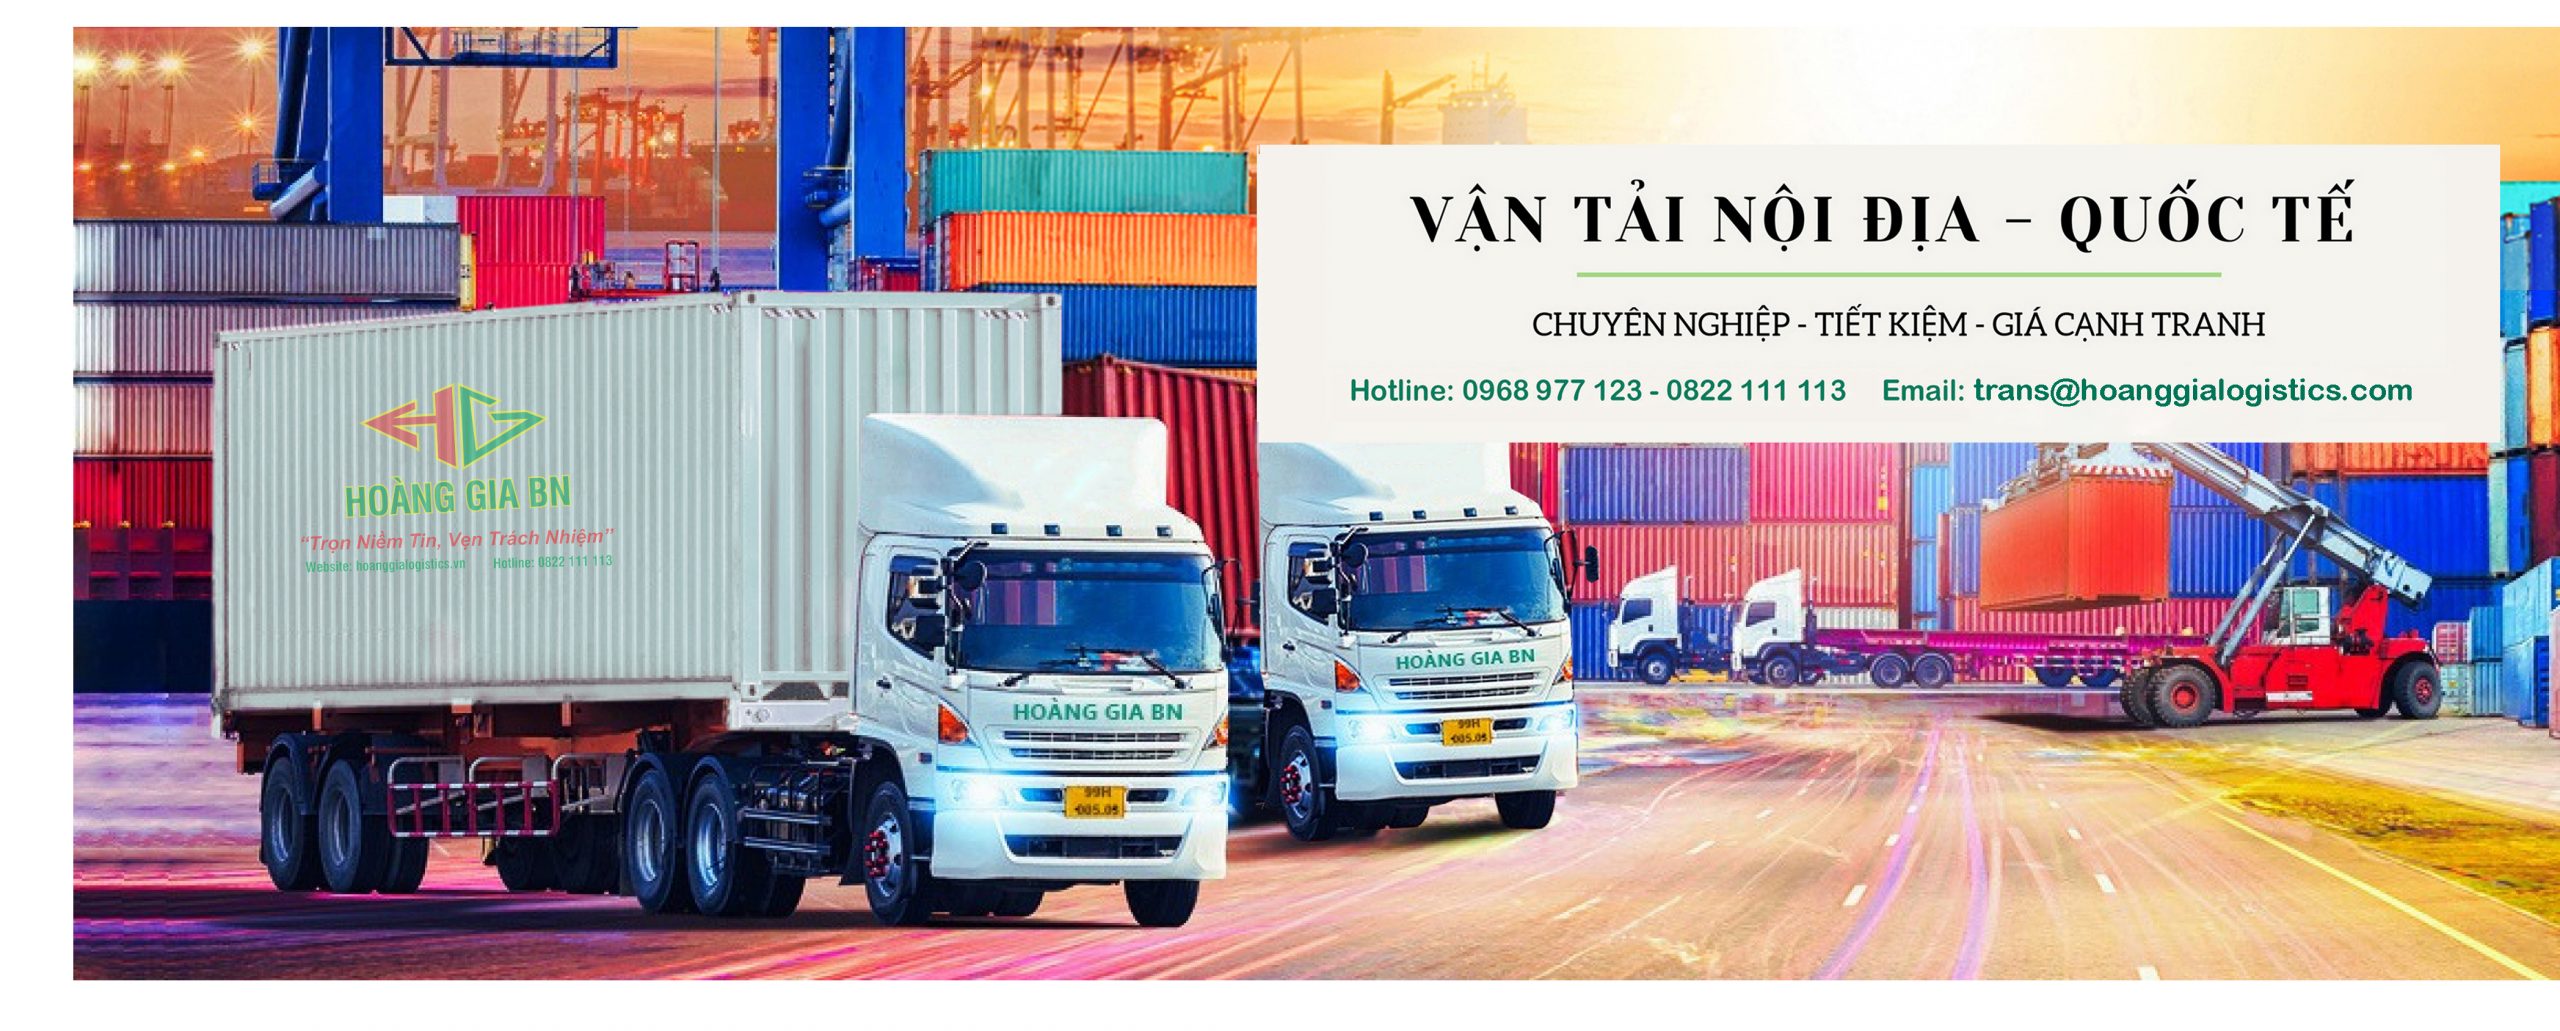 Hoàng Gia BN cung cấp vận chuyển hàng hóa nội địa và quốc tế